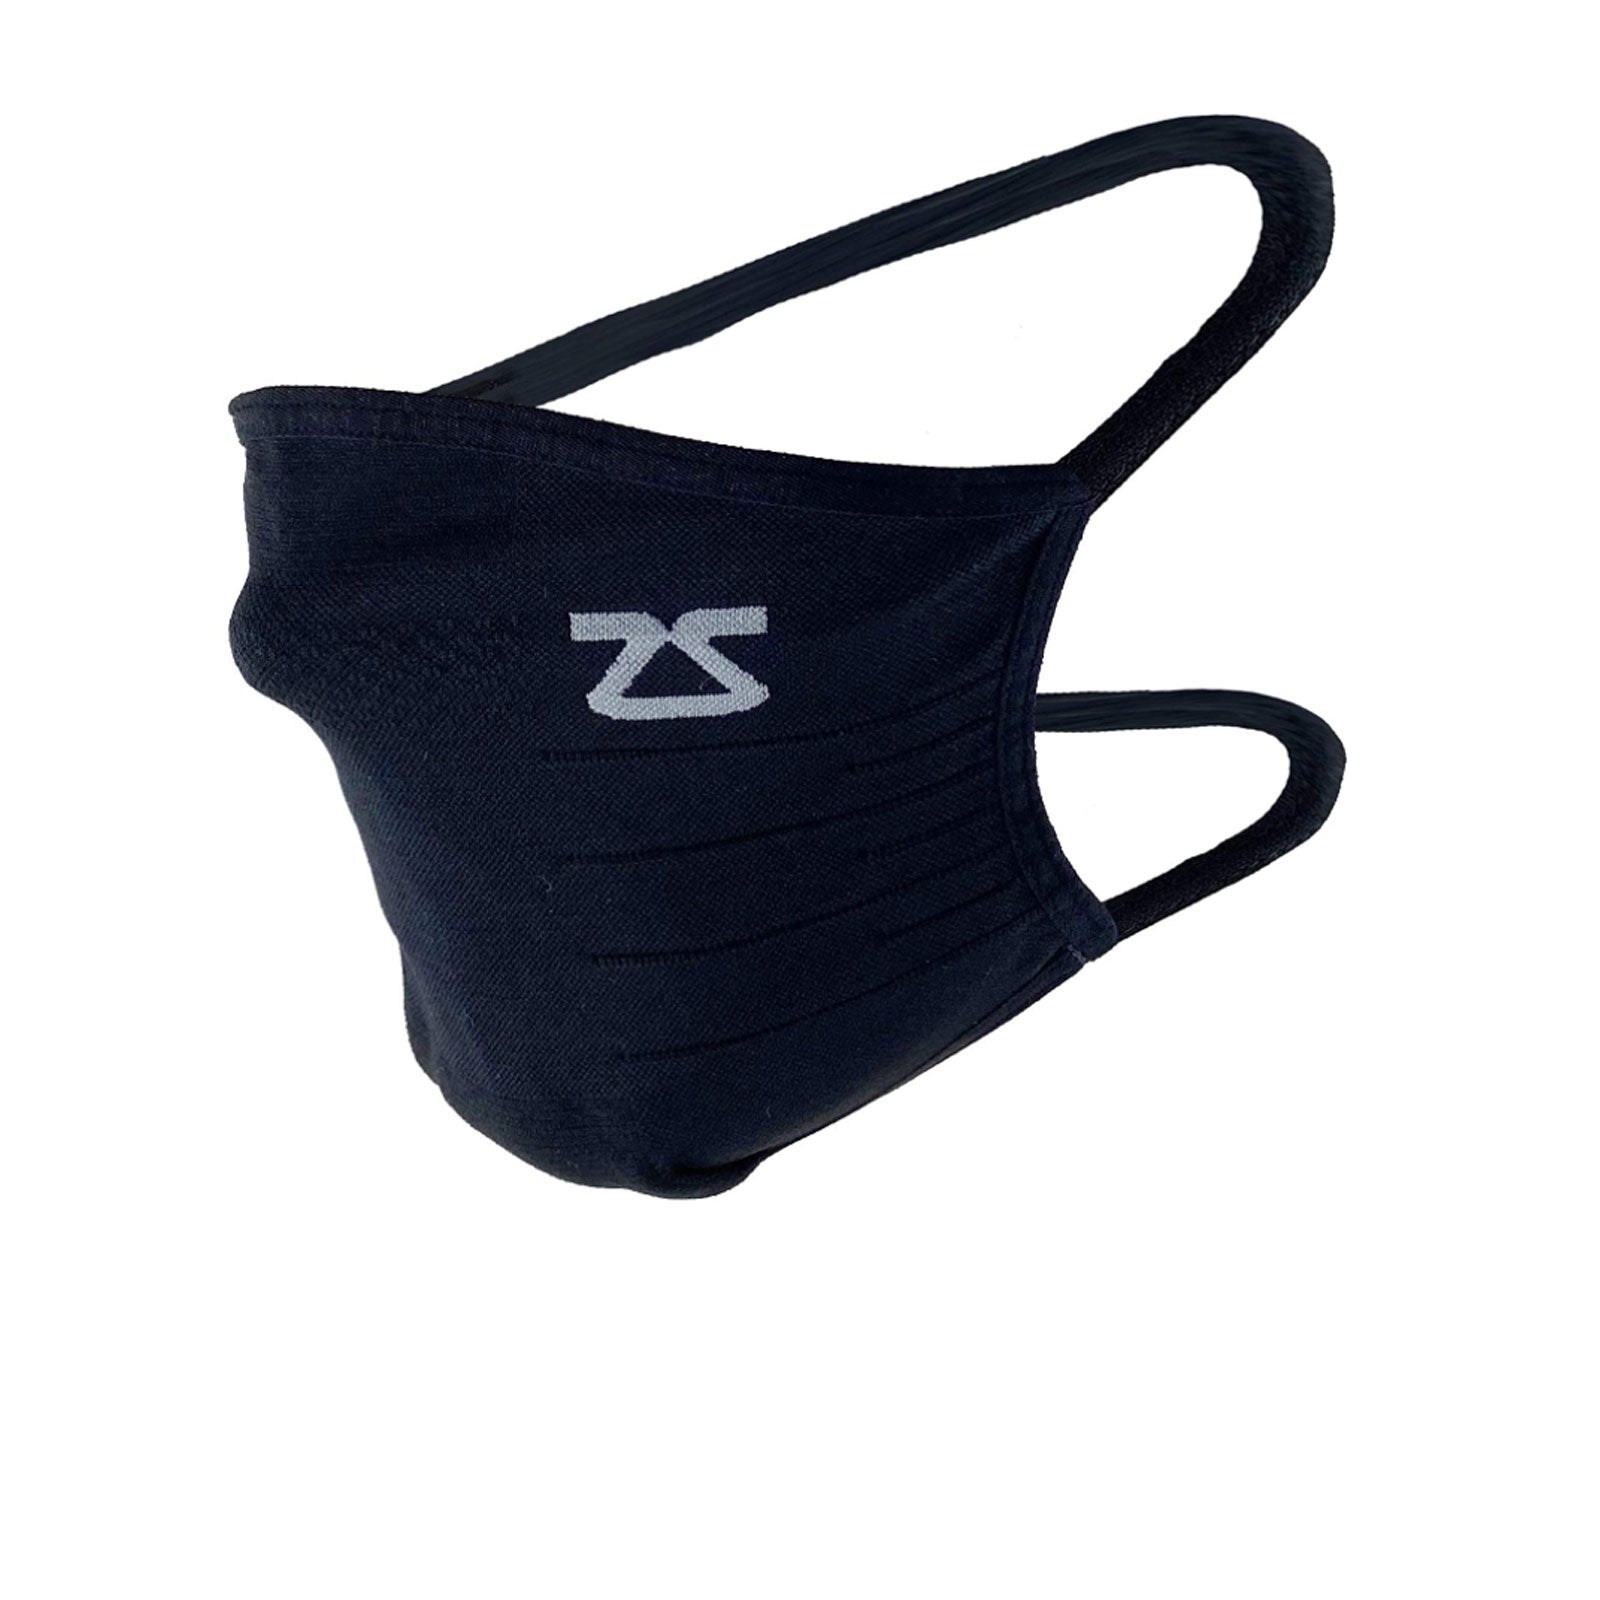 Zensah Technical Face Mask (Unisex) - Black Outerwear - Headwear - Masks - The Heel Shoe Fitters